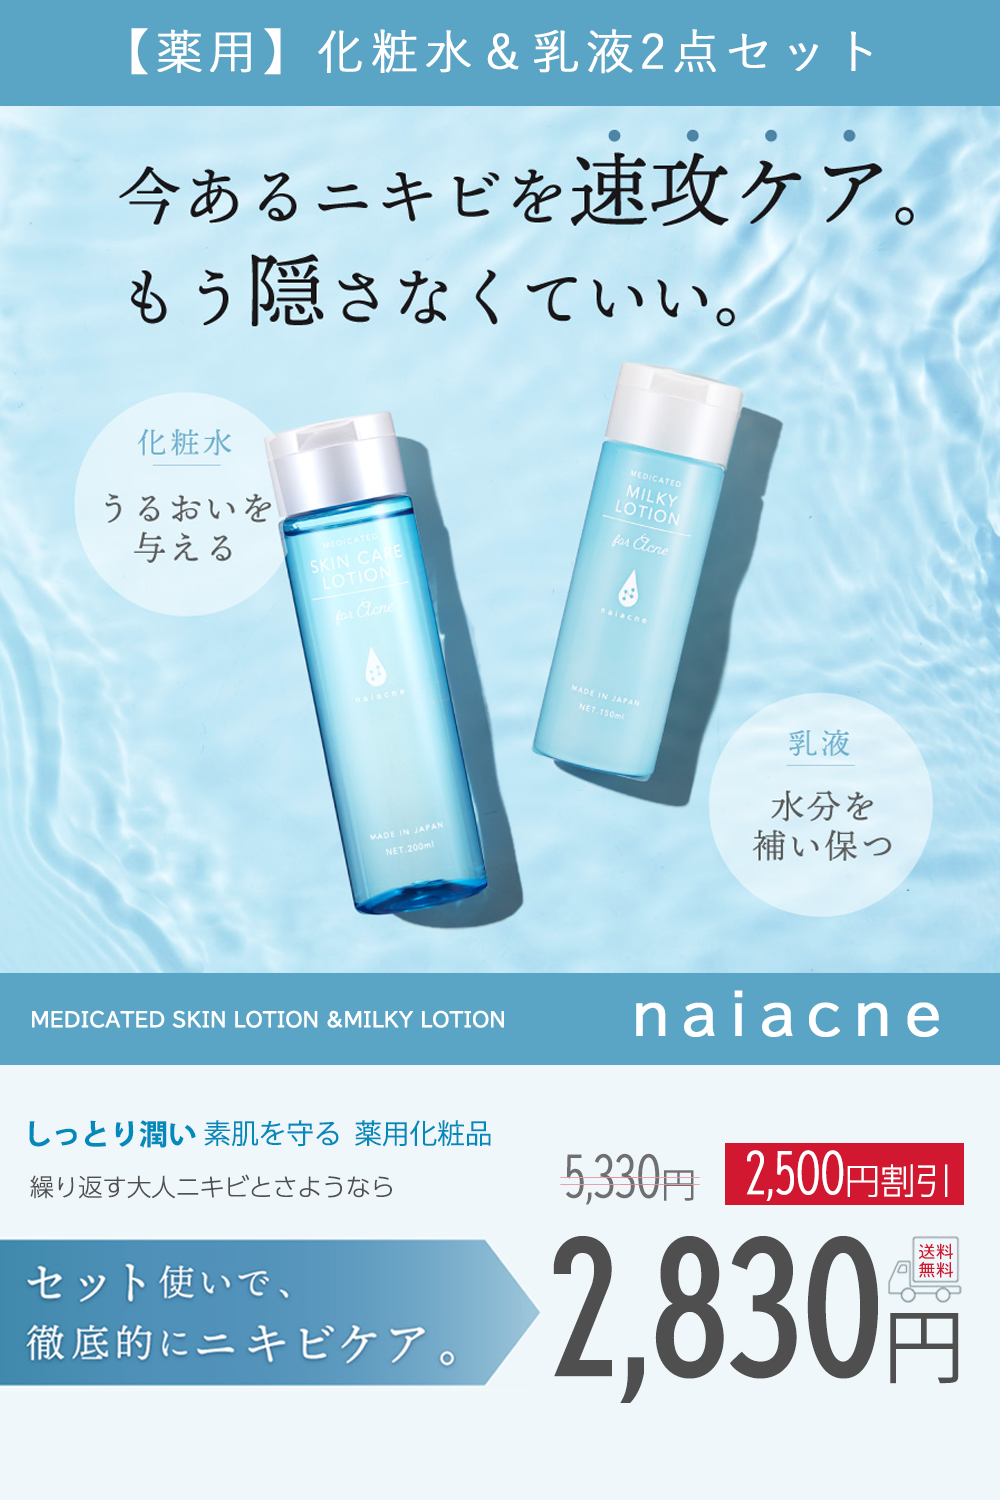 オストリッチ AGローション 150ml 3個セット ナローネ 化粧水 OST-Rich ...